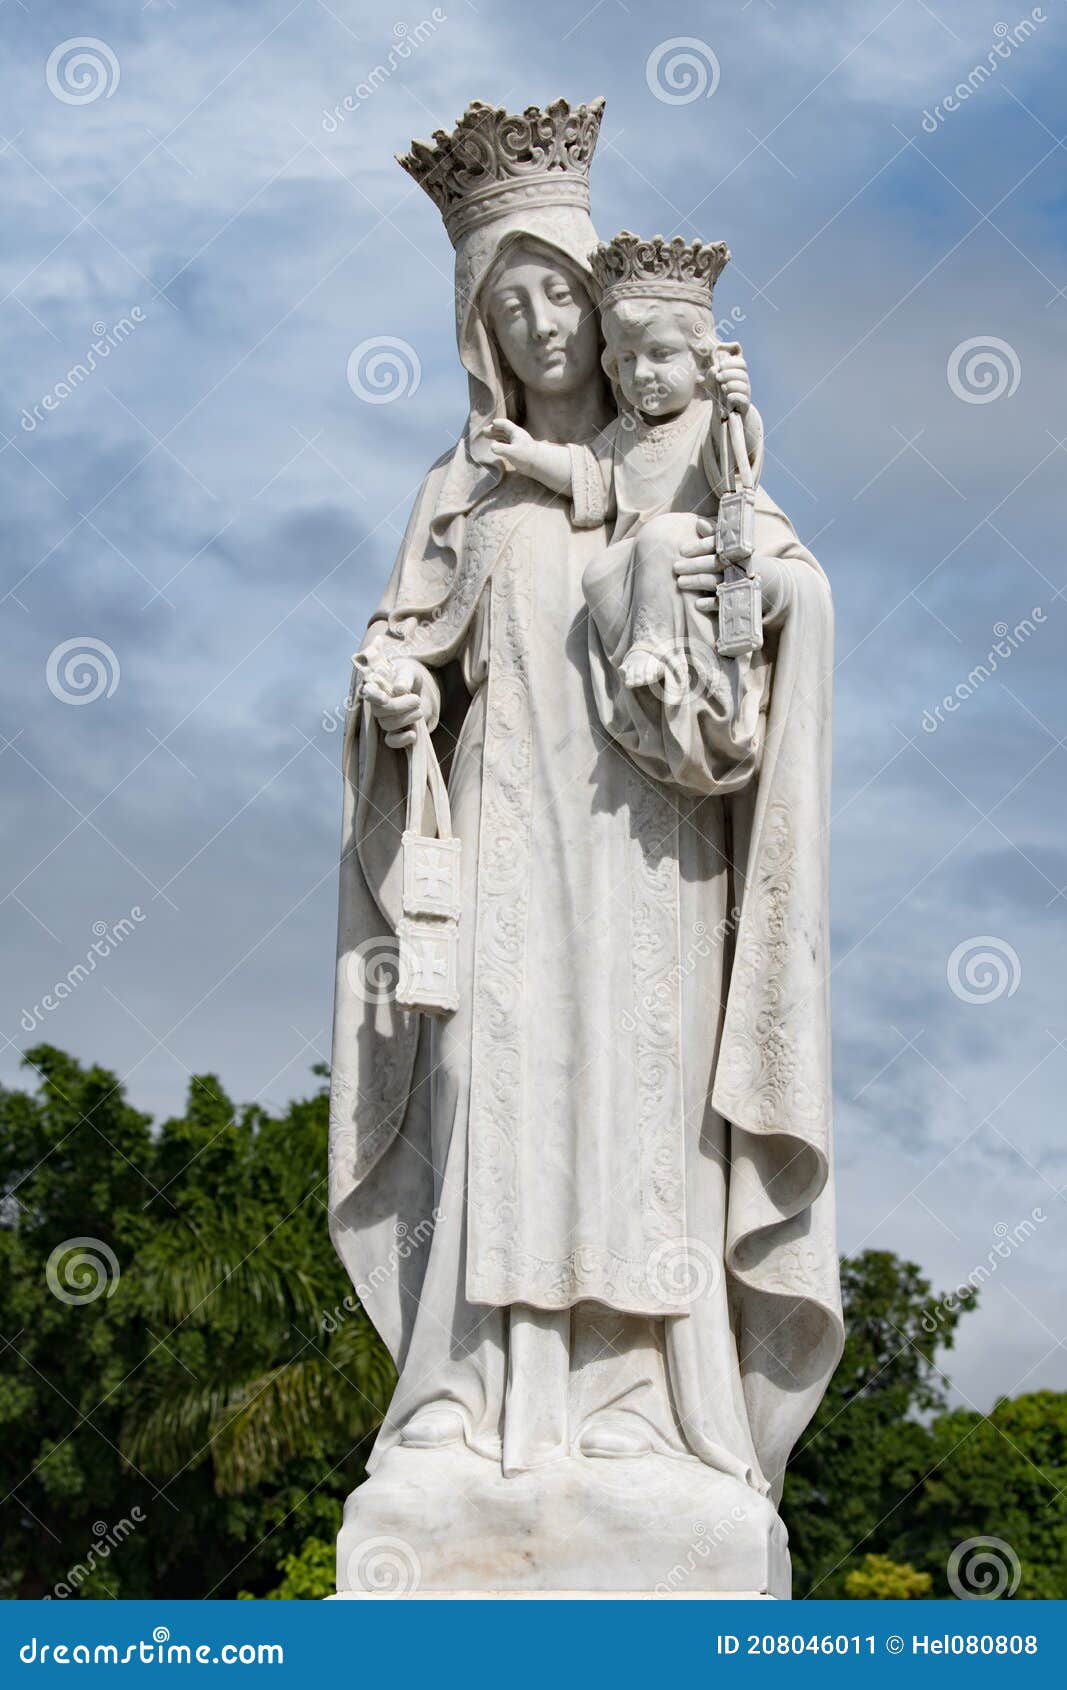 statue of virgin mary with son jesus, both with crown, marble statue on cemetery cementerio santa ifigenia, santiago de cuba, cuba